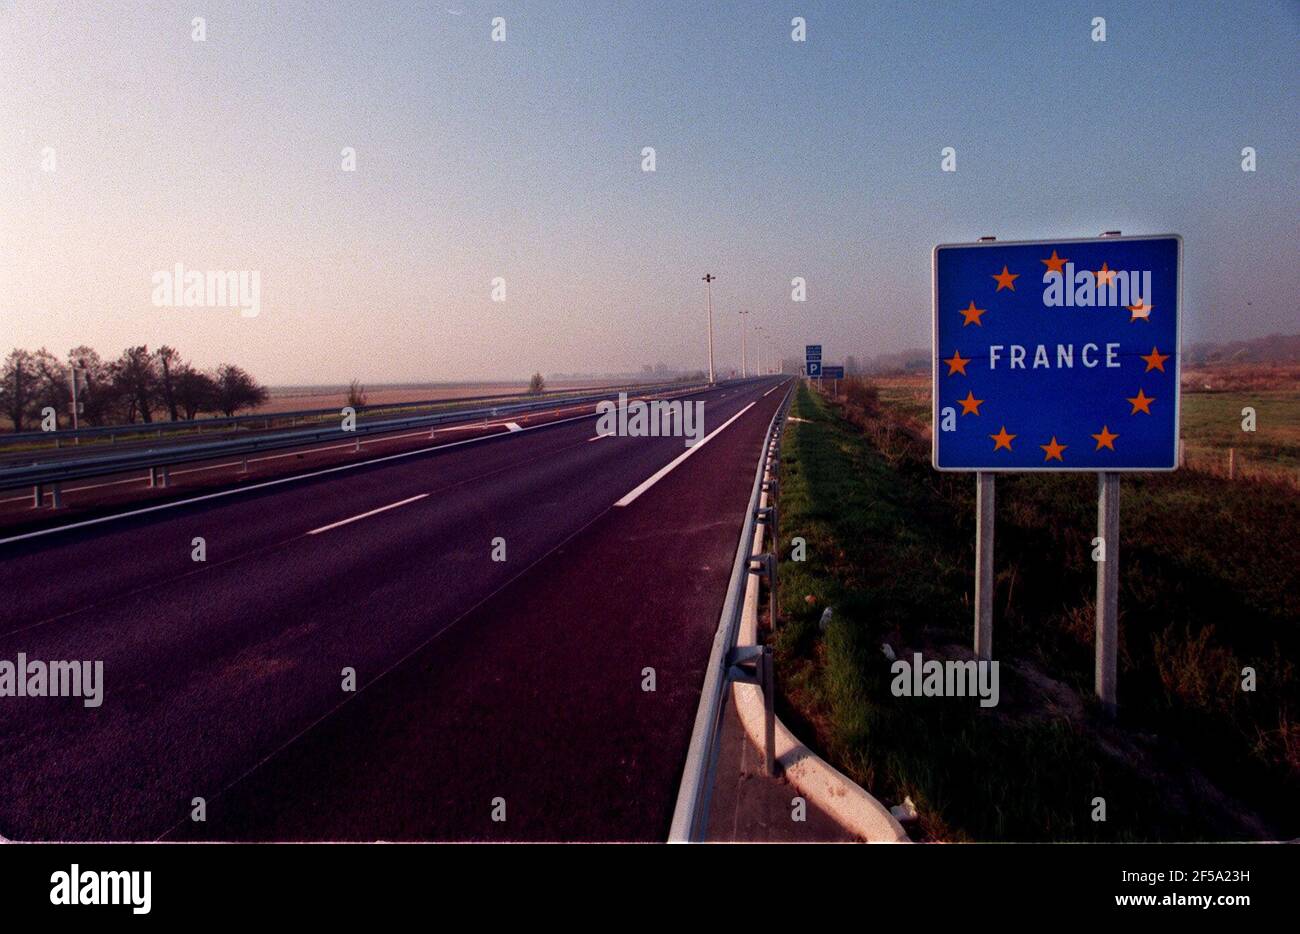 Les chauffeurs de camions de Fraench frappent l'A26 près de la Belgique le 3 novembre 1997 Banque D'Images